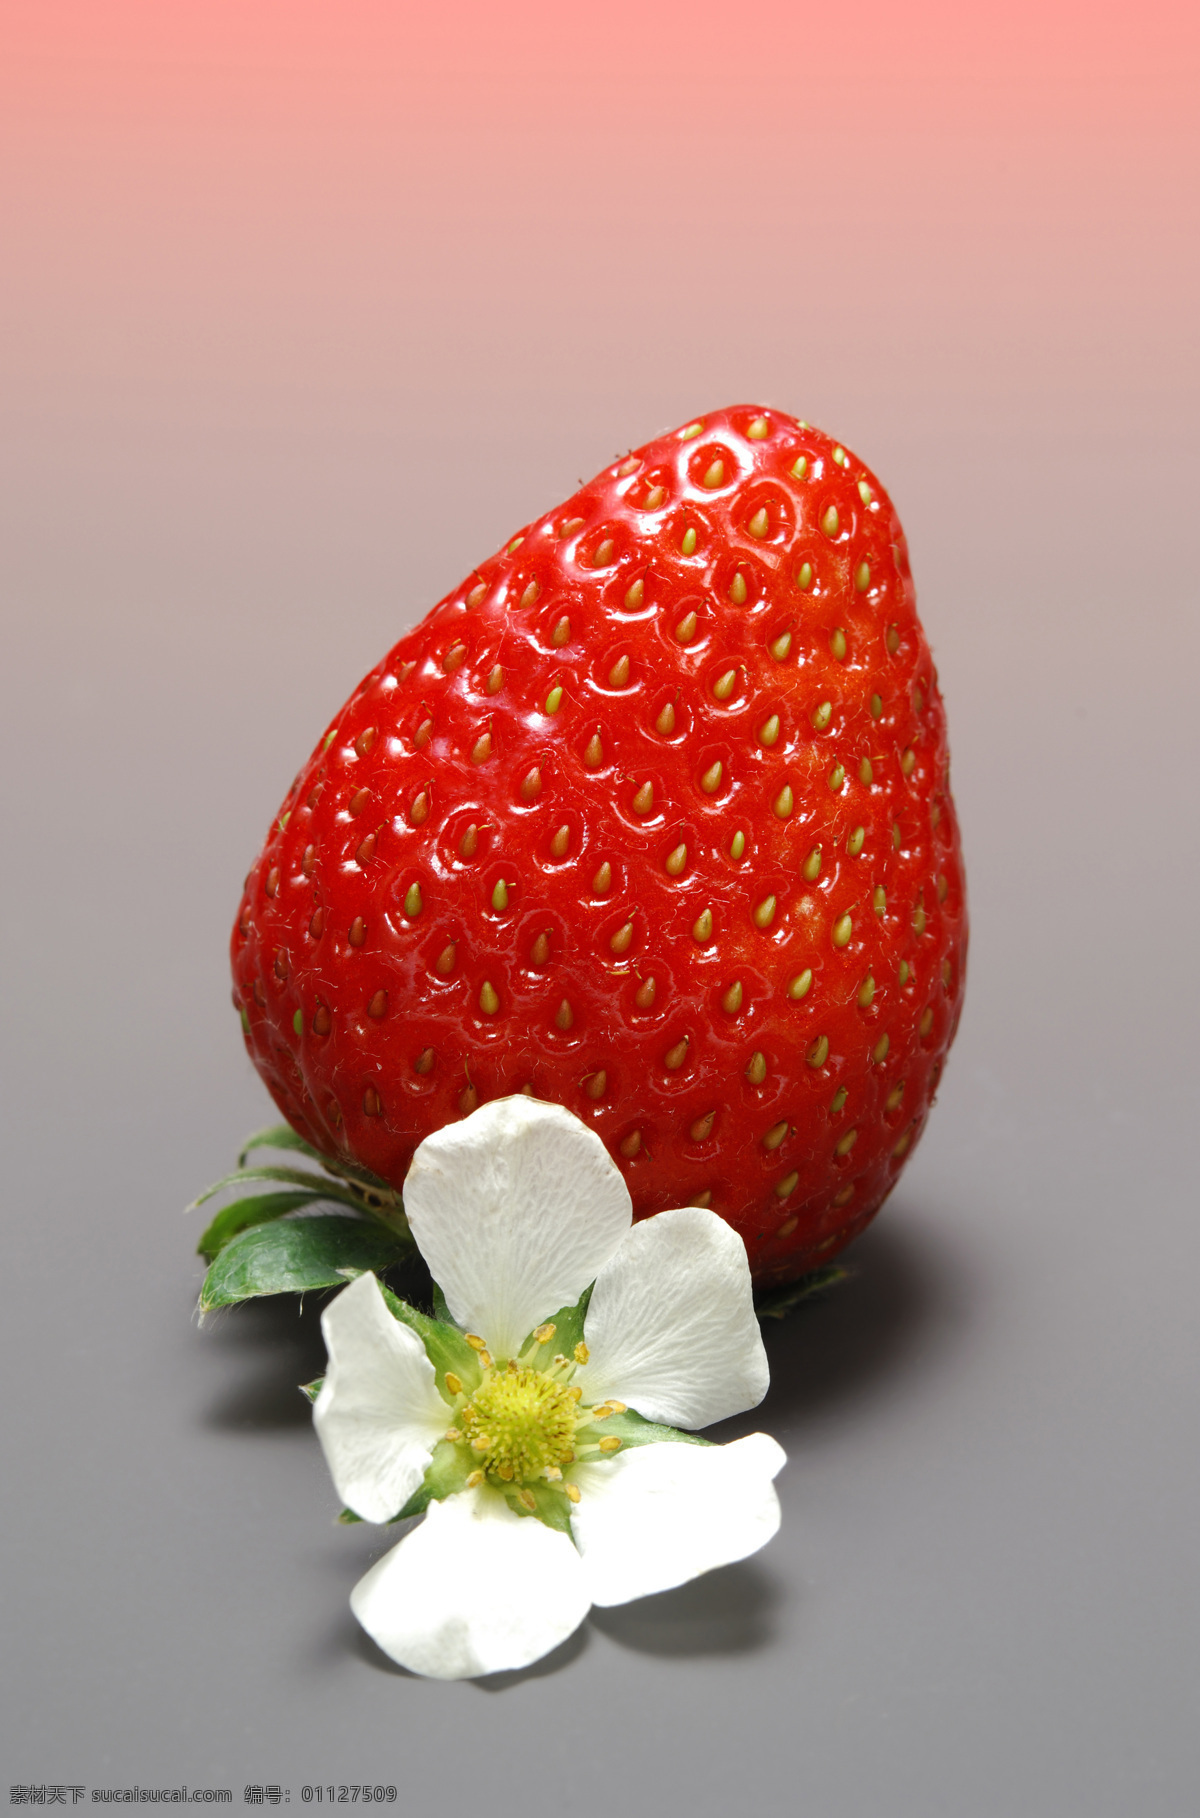 新鲜 草莓 新鲜草莓 红色草莓 草莓花 健康果实 绿色水果 可口的草莓 有机食品 有机水果 新鲜水果 草莓高清图片 摄影素材 水果 水果蔬菜 美食文化 蔬菜图片 餐饮美食